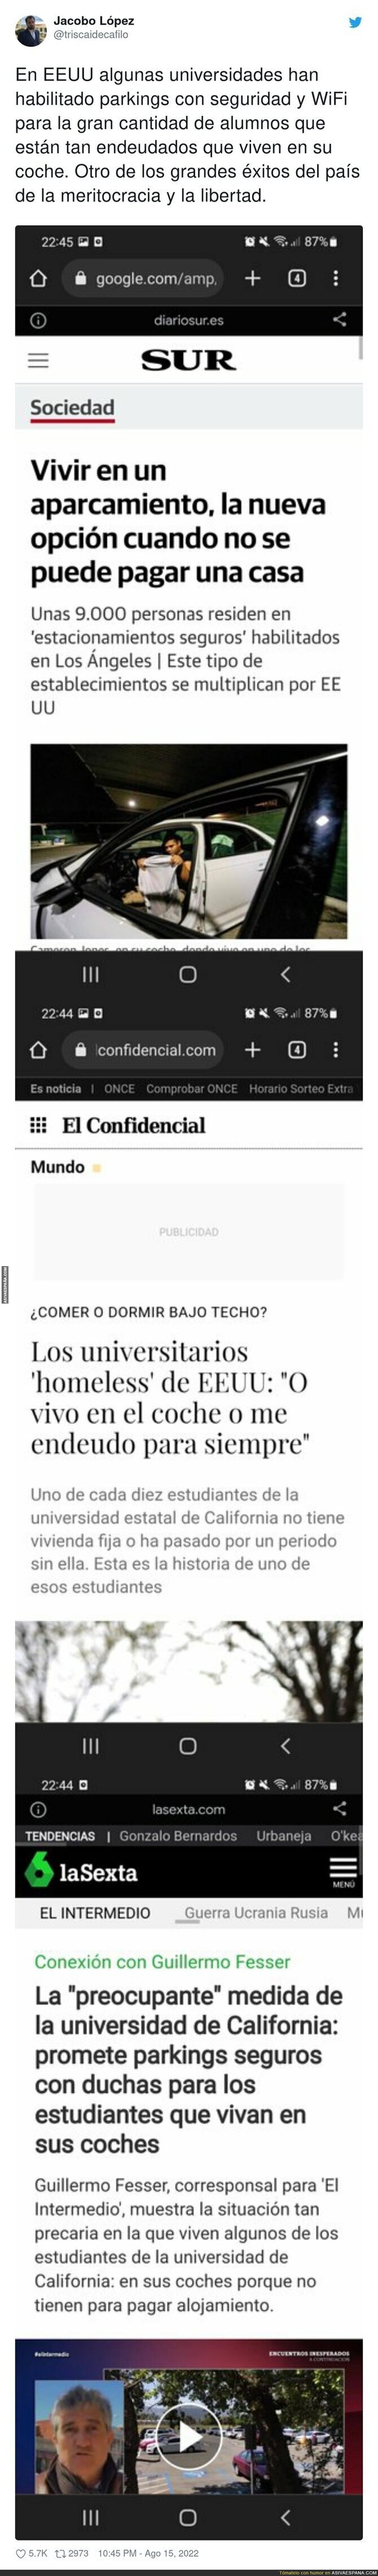 No puedo esperar a que El País lo llame moda y le ponga algún nombre absurdo